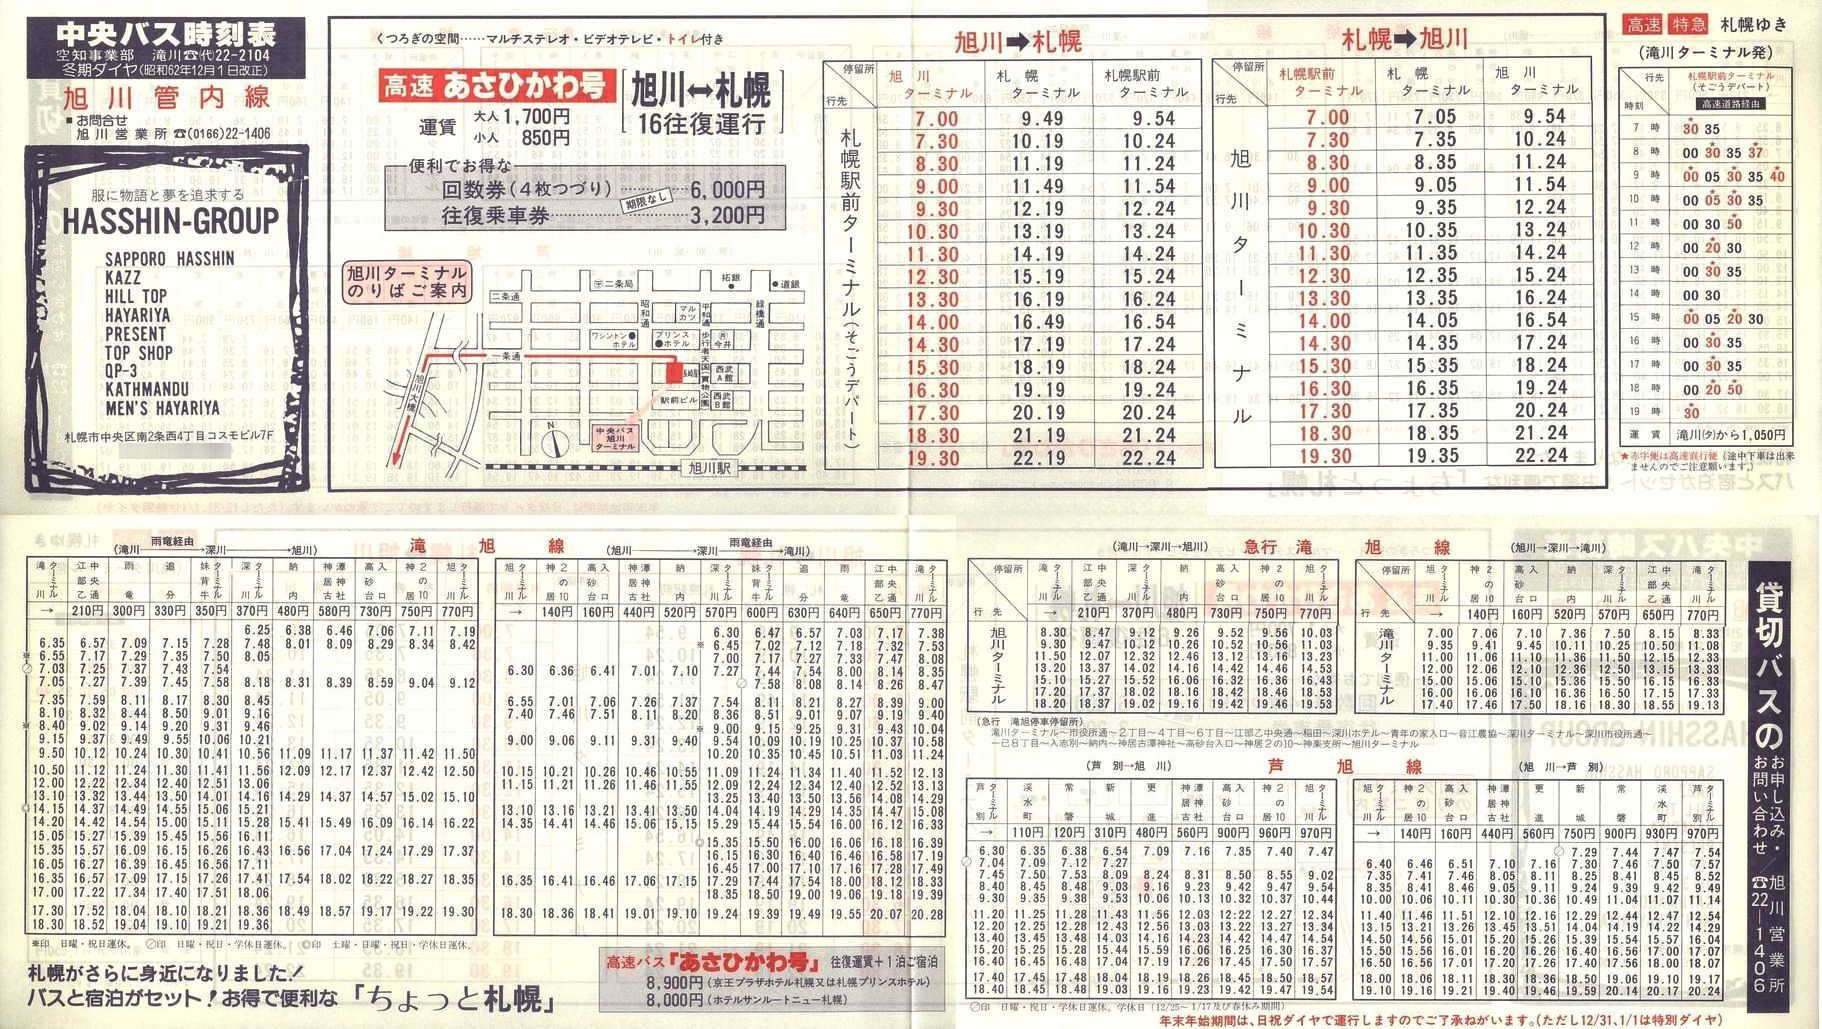 1987-12-01改正_北海道中央バス(空知)_旭川管内線時刻表